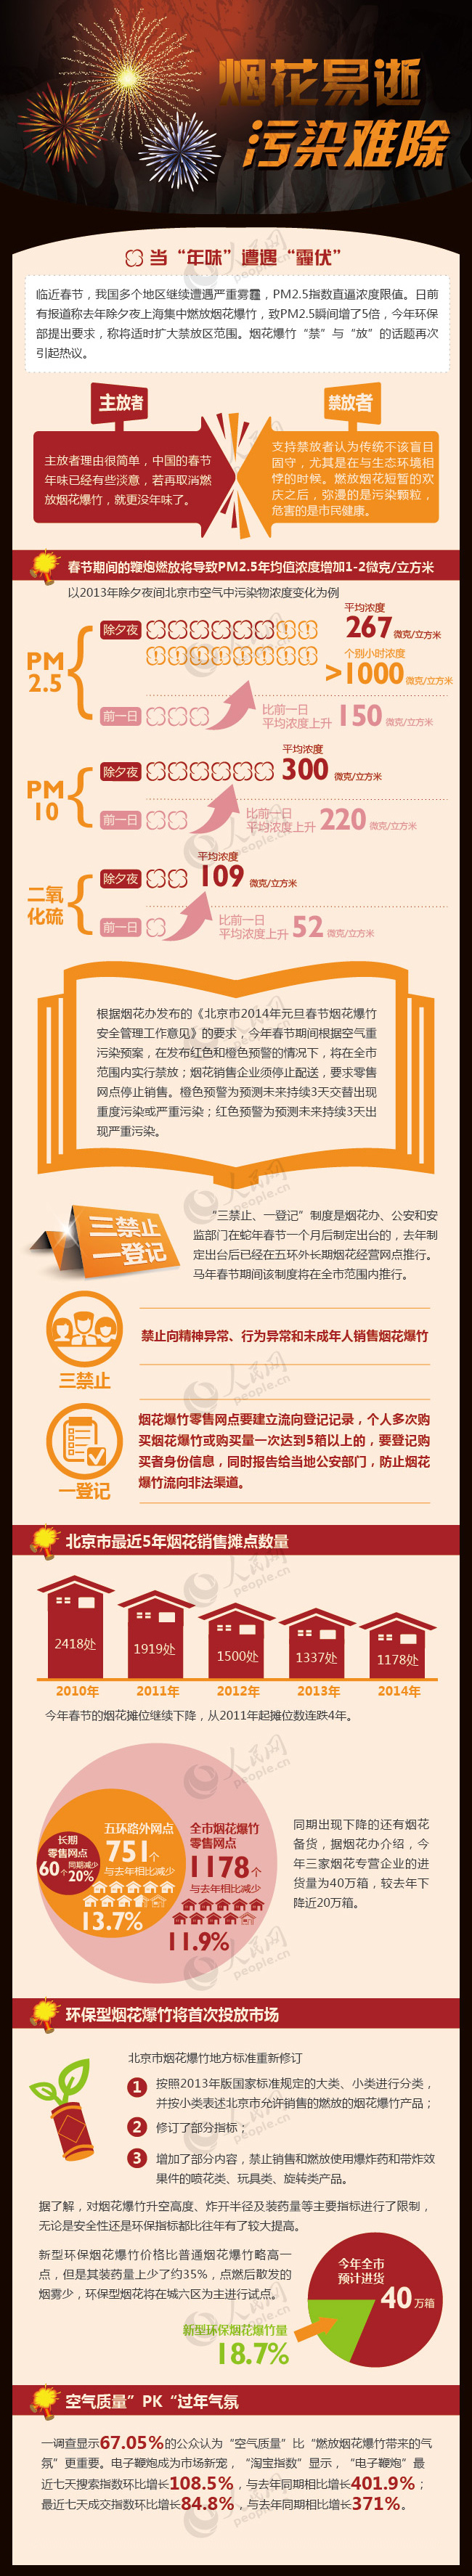 北京春节期间遇“红橙预警”将禁放烟花爆竹